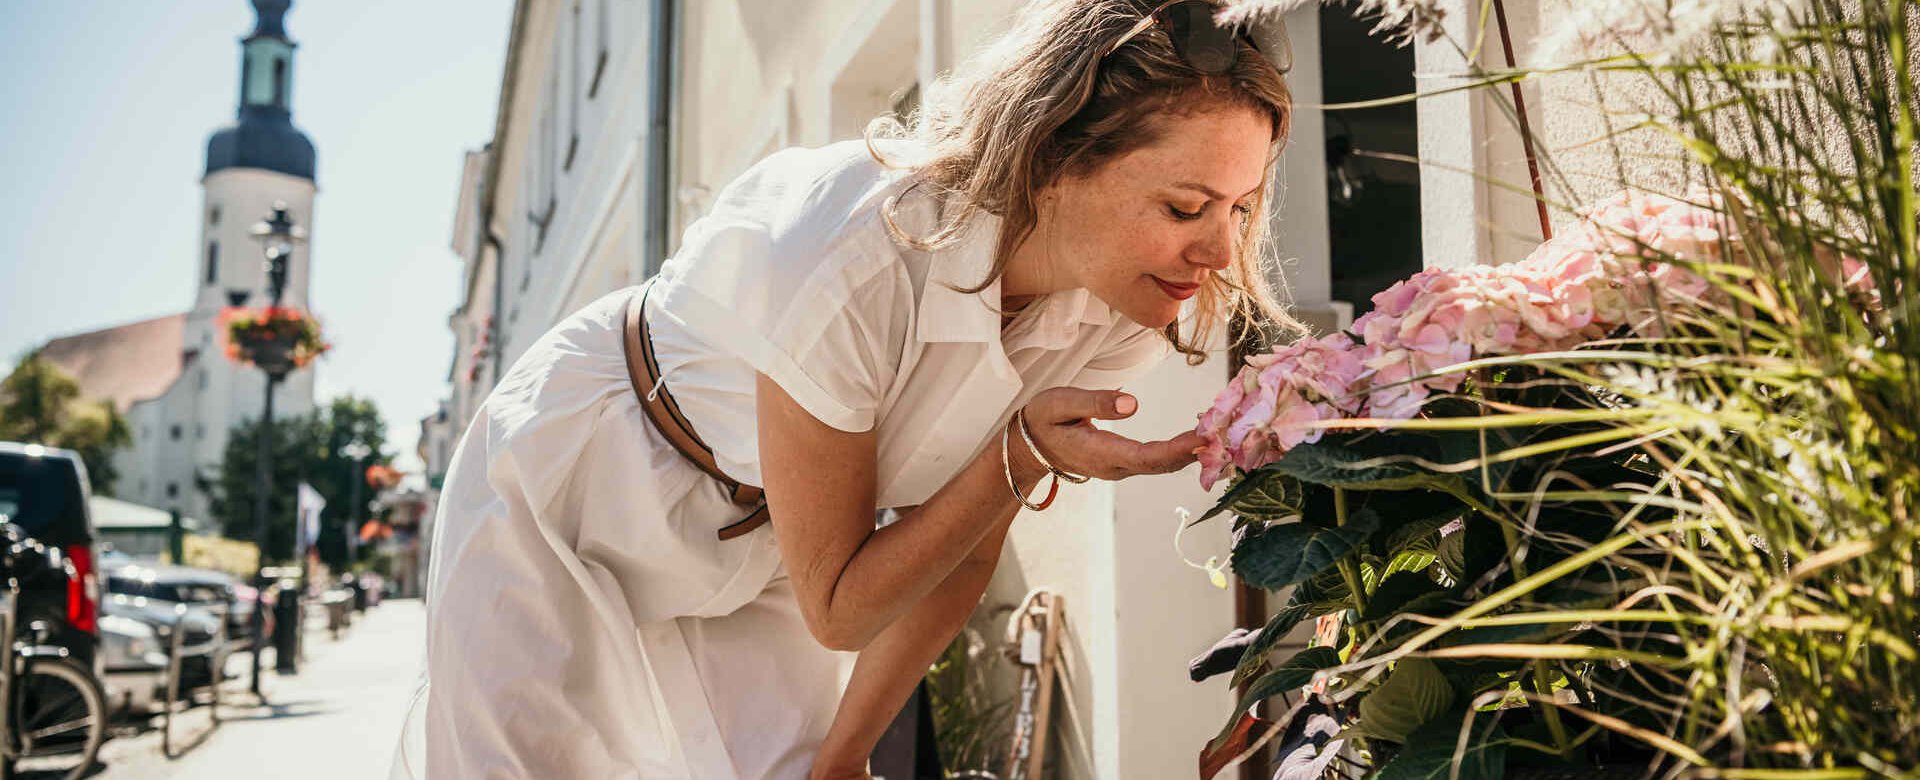 Frau steht vor Blumenladen und riecht an Blume im Hintergrund eine Stadtszene mit Kirche